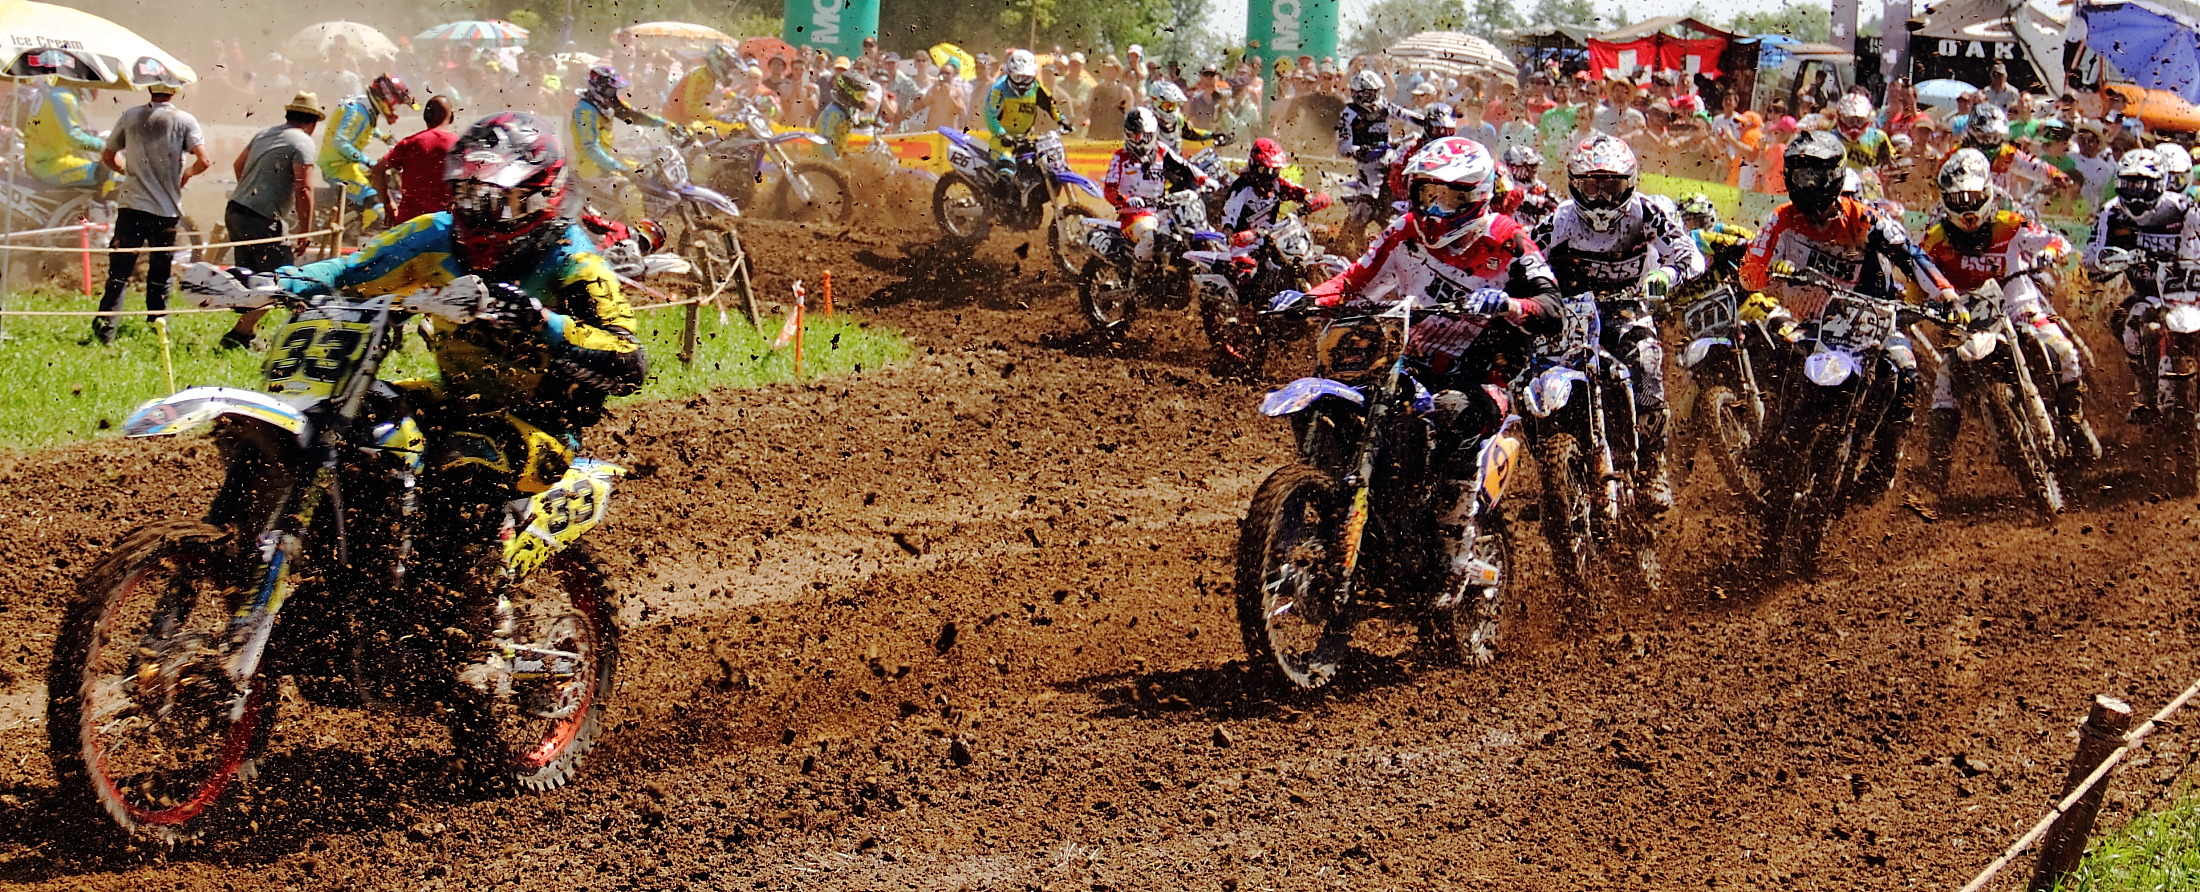 Motocross Event 2014-Juni, Muri, CH